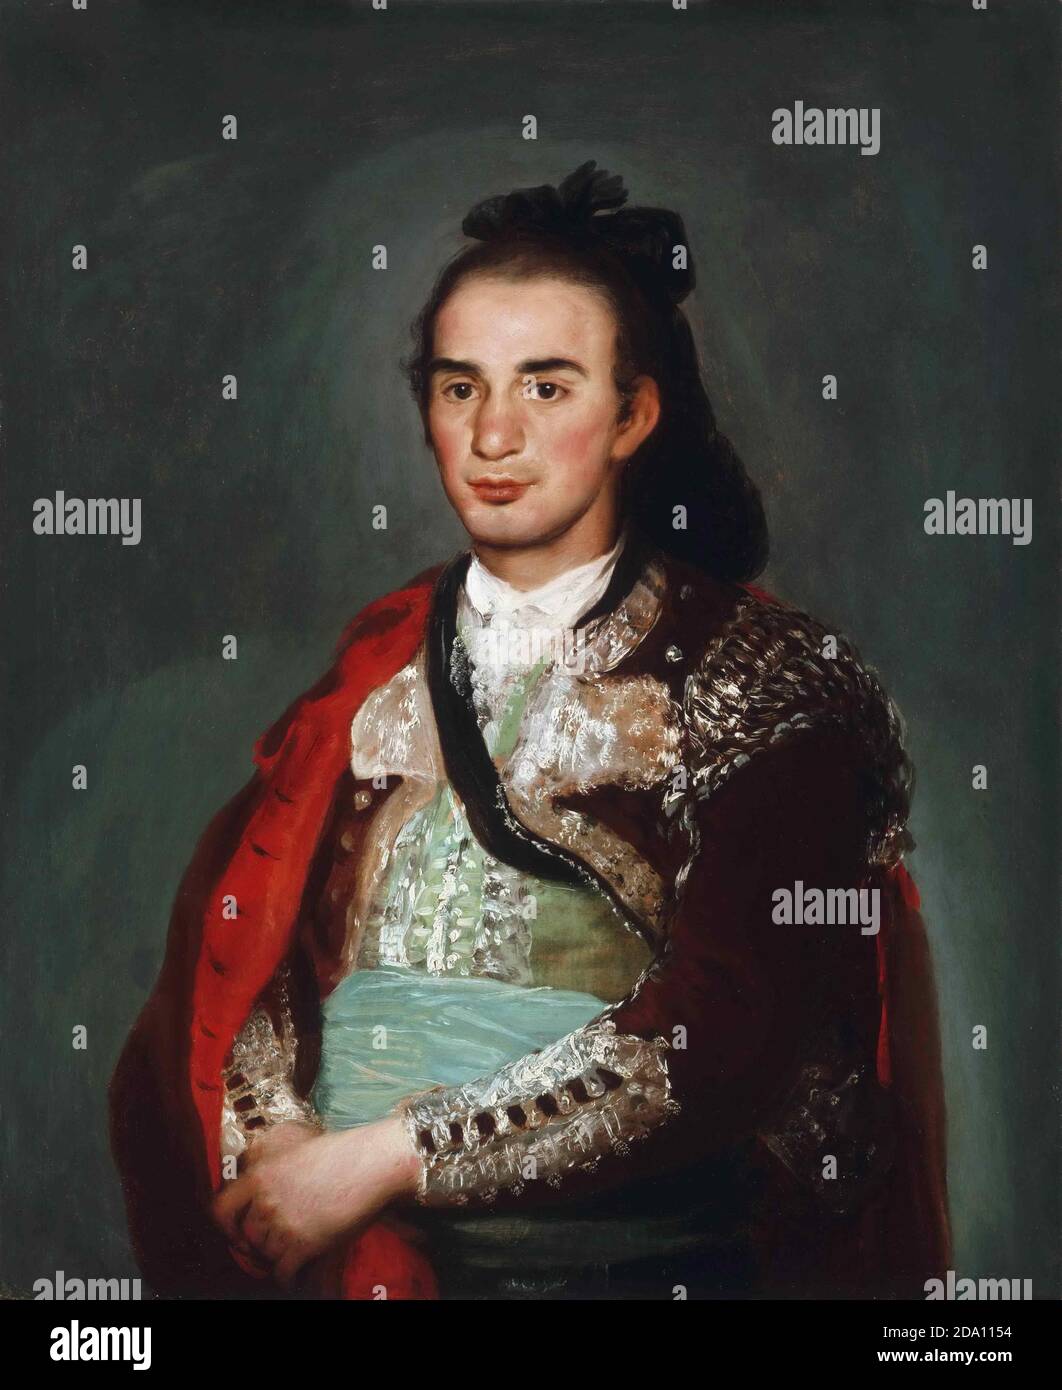 Francisco José de Goya y Lucientes, Español, 1746-1828 -- Retrato del Toreador José Romero Foto de stock